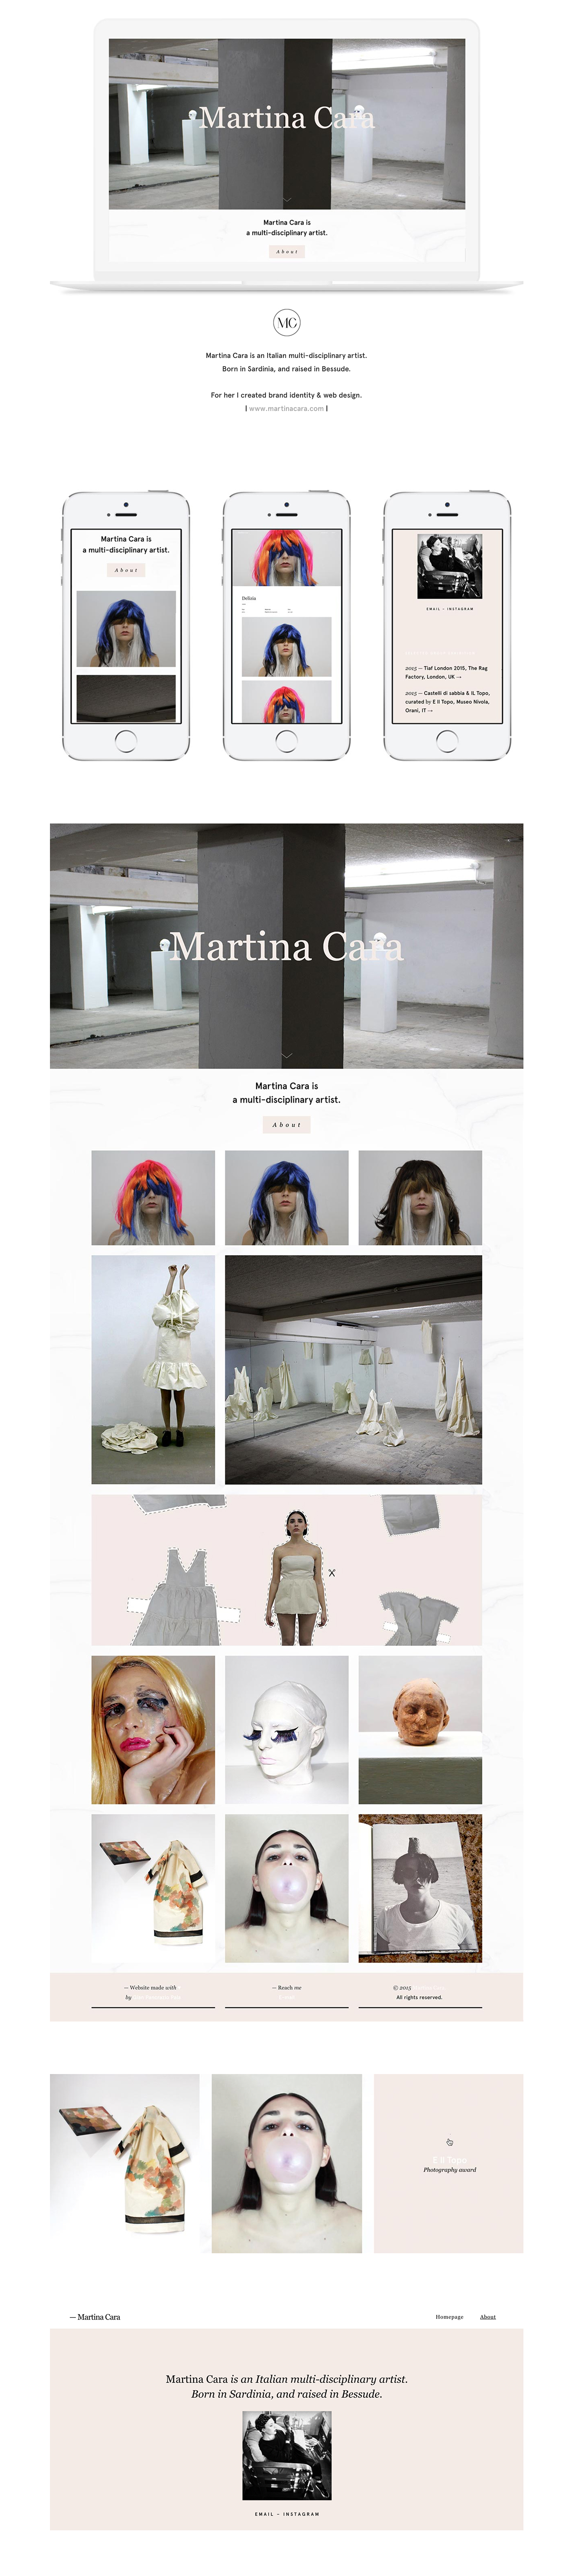 artist visual designer Website ui ux portfolio martina cara